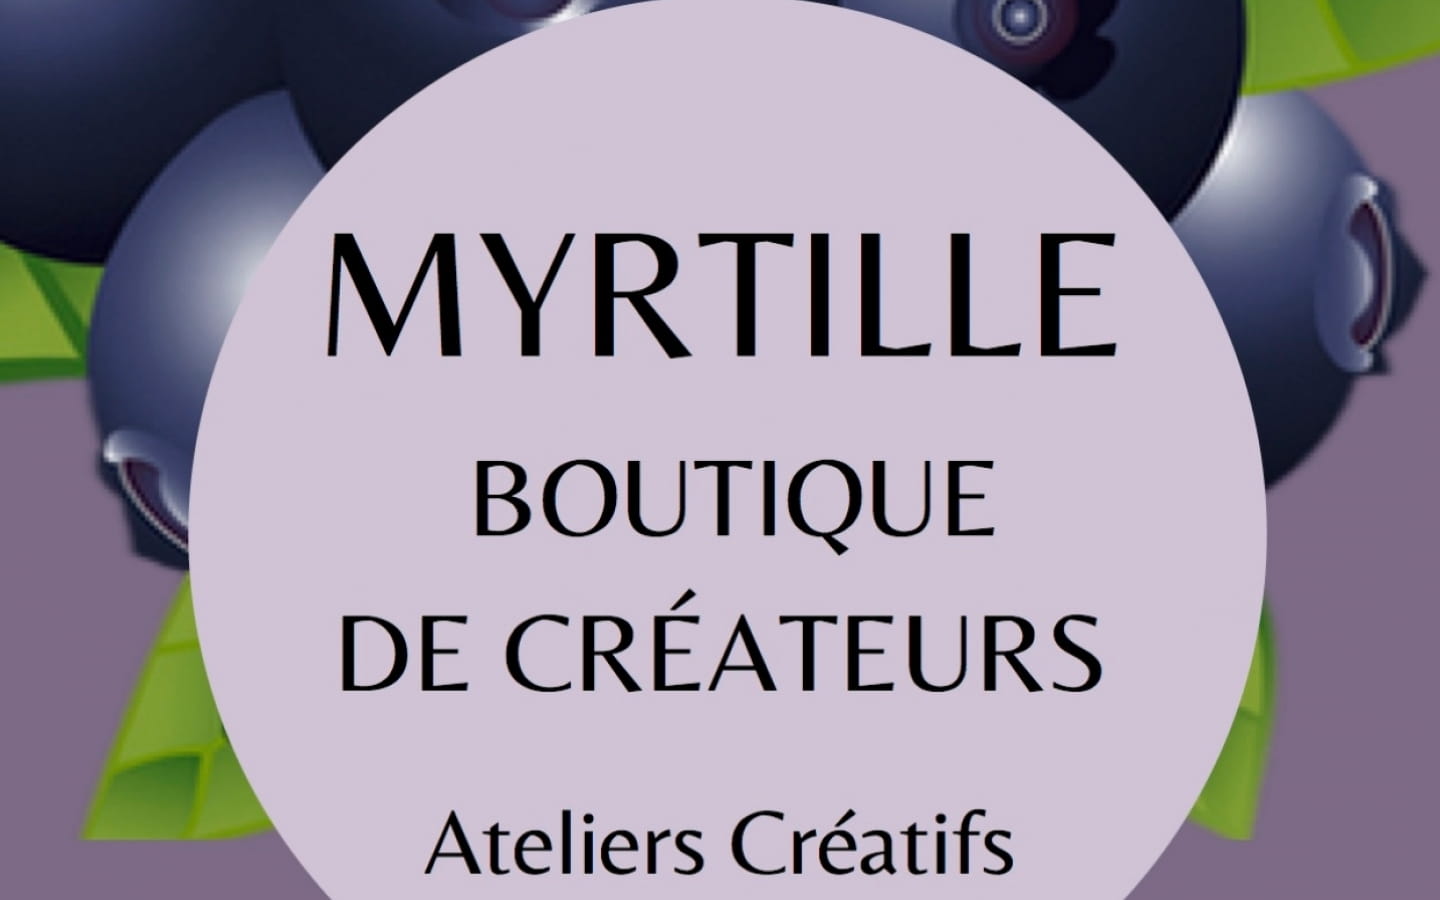 Myrtille, Boutique de créateurs